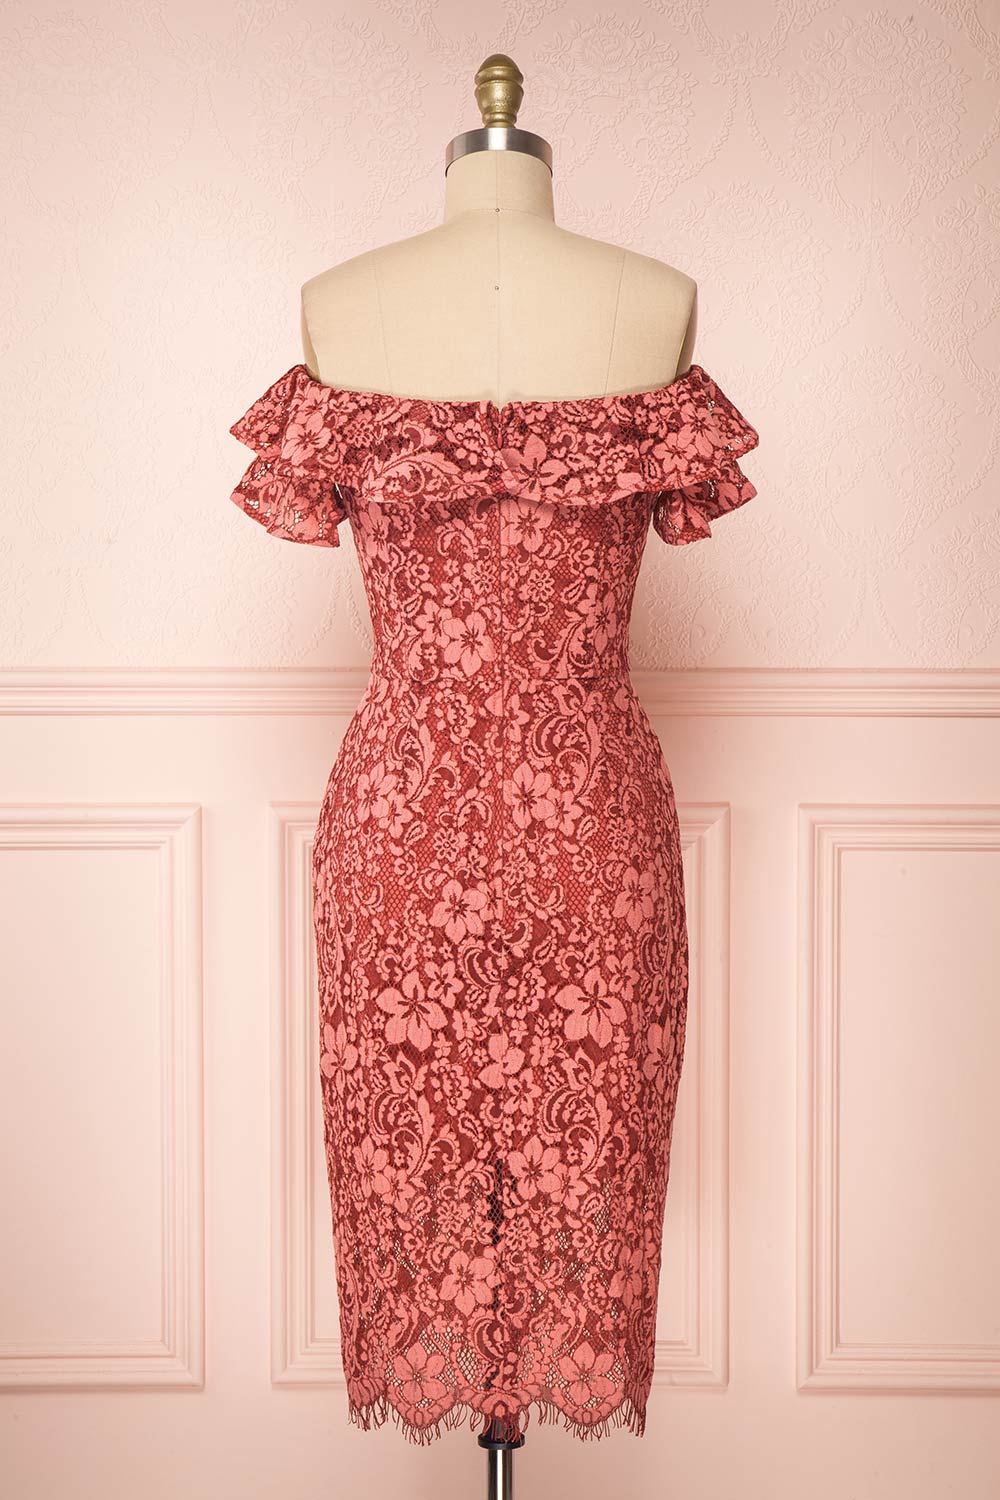 Goose Island goITT375 - Flattering lace dress - Dusky Pink - Made